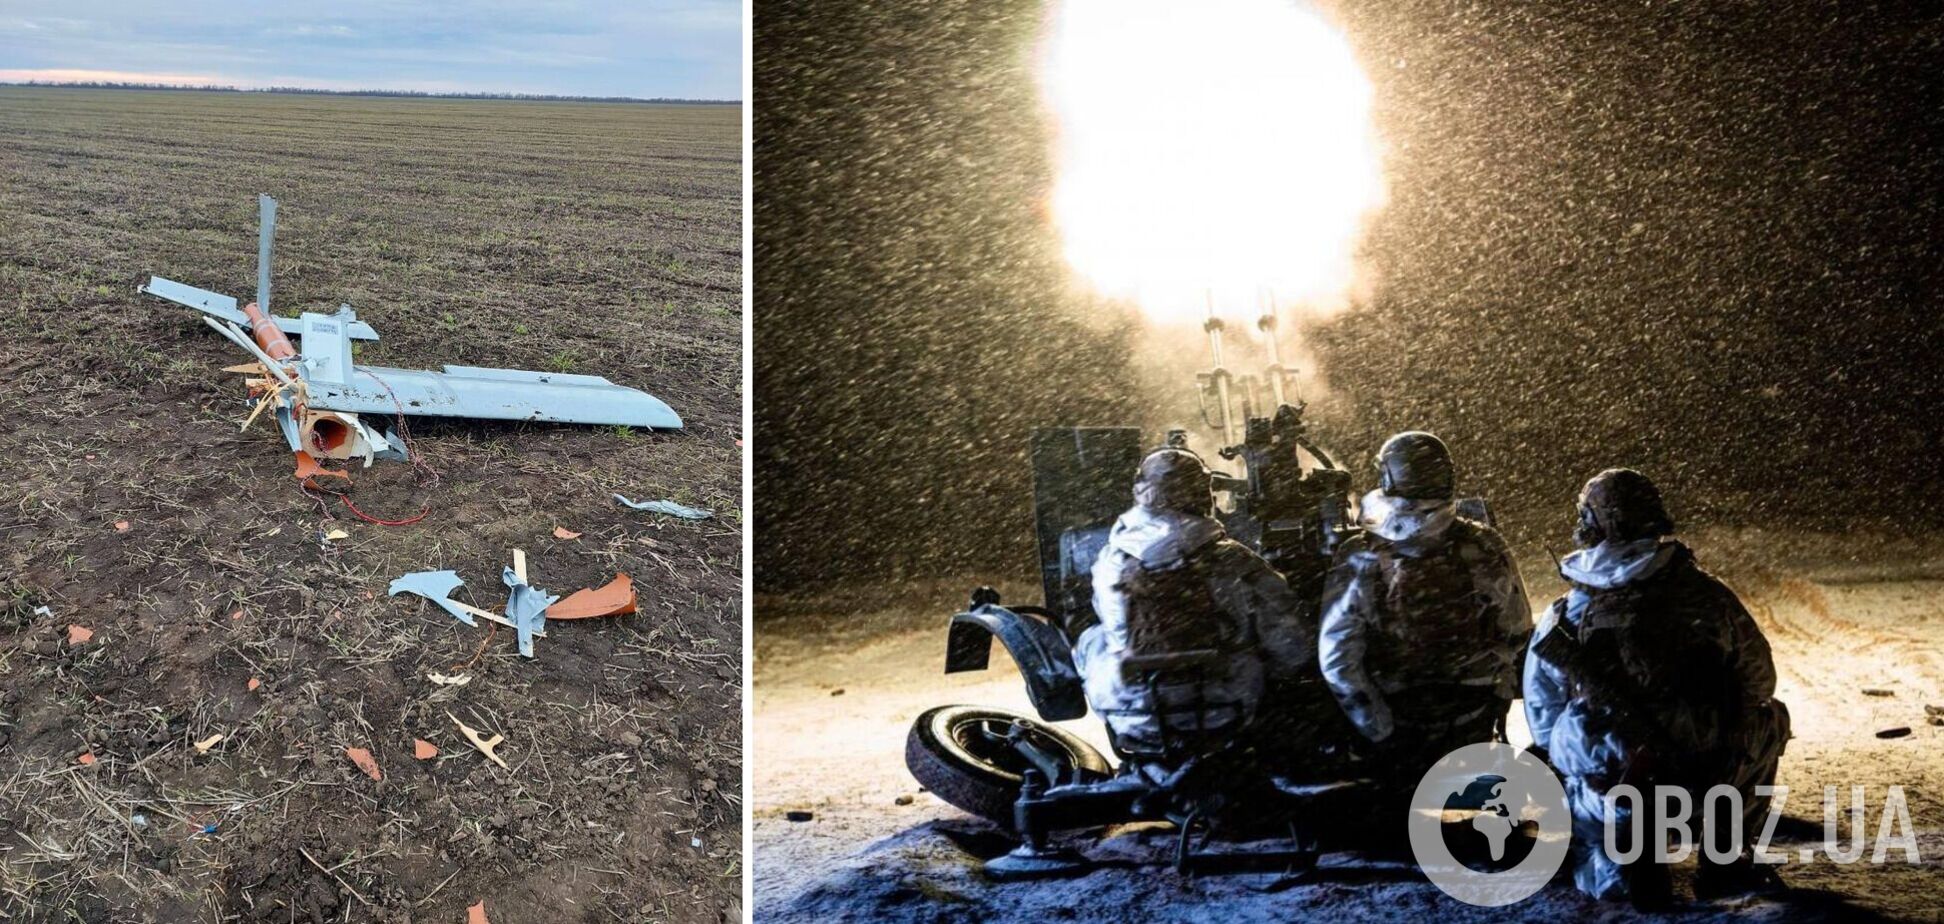 'Аналогов нет': Ким показал российский дрон, сбитый в Николаевской области. Фото и видео